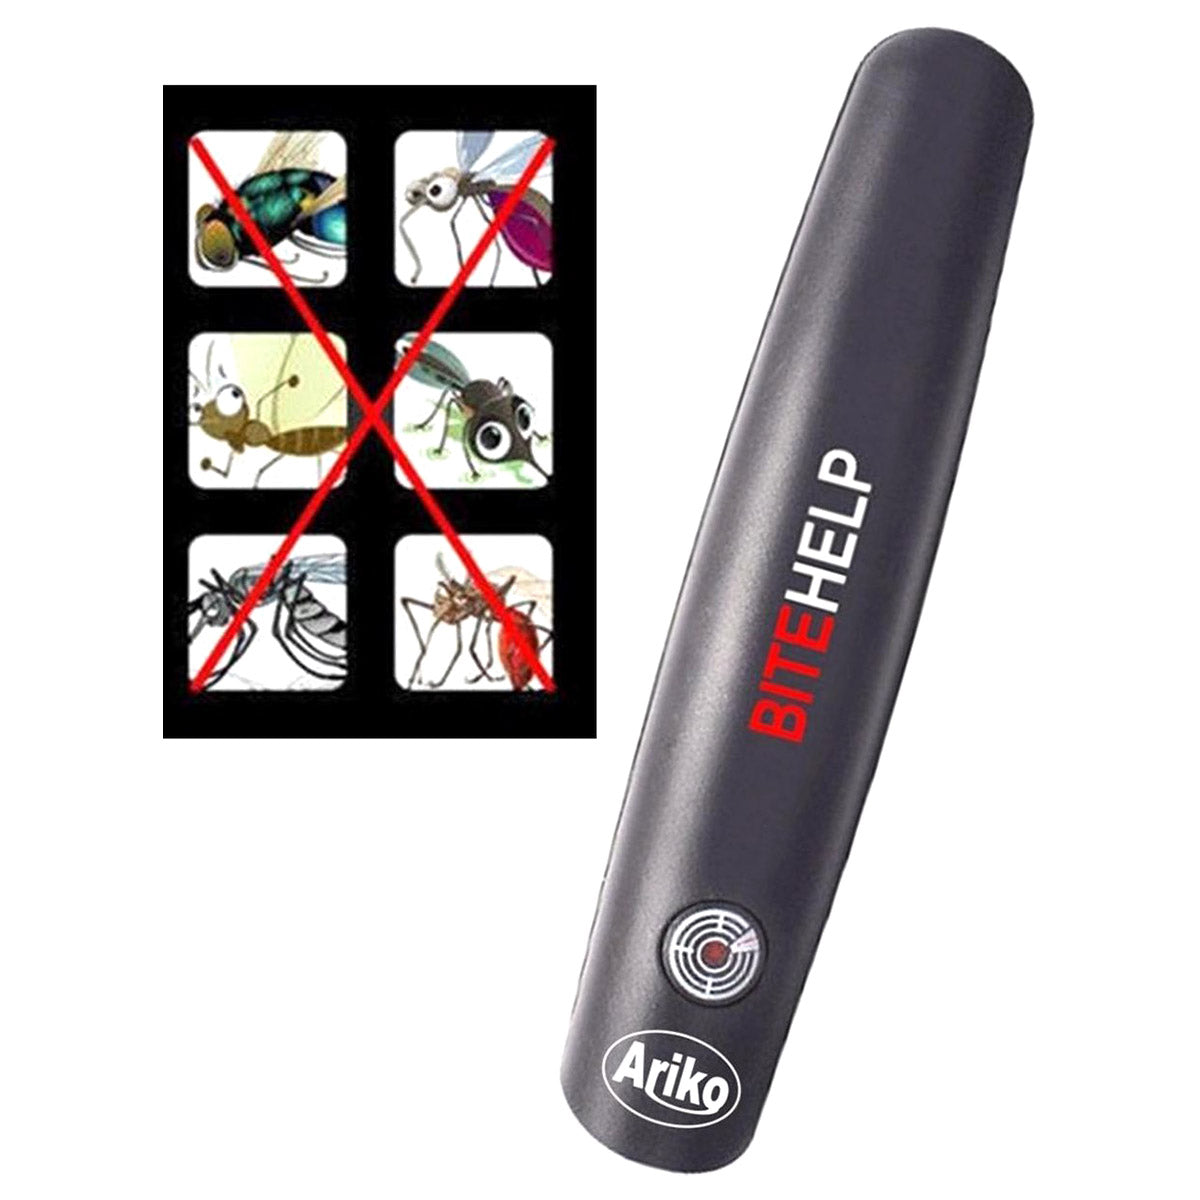 Ariko Bite Help Mückenstich Stift Insektenstich Schmerzlinderung Juckreiz lindern Mückenstift Mückenstich Mückenstich